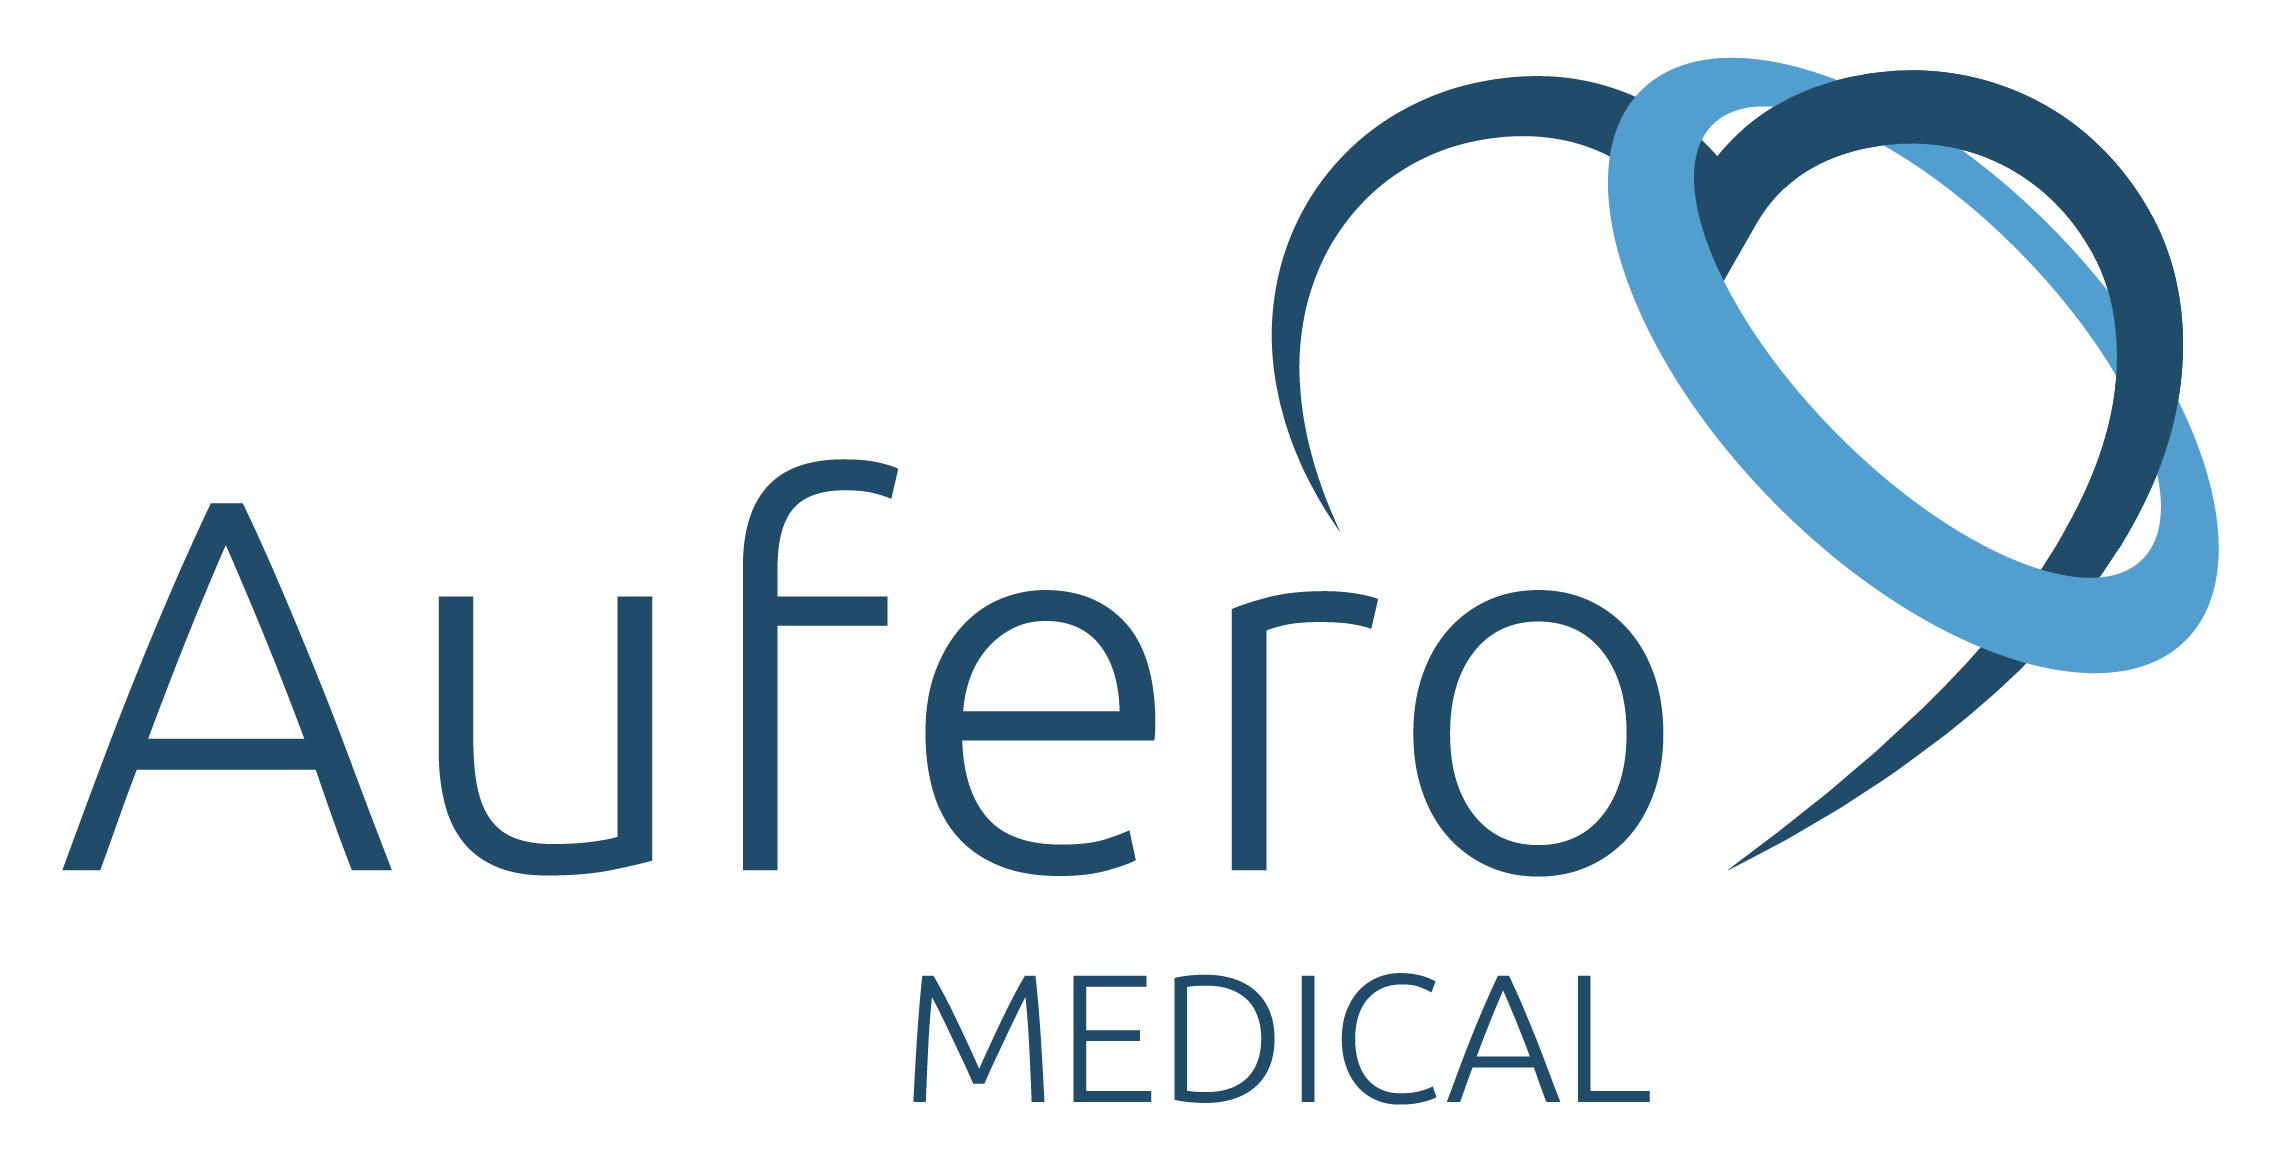 Aufero Medical